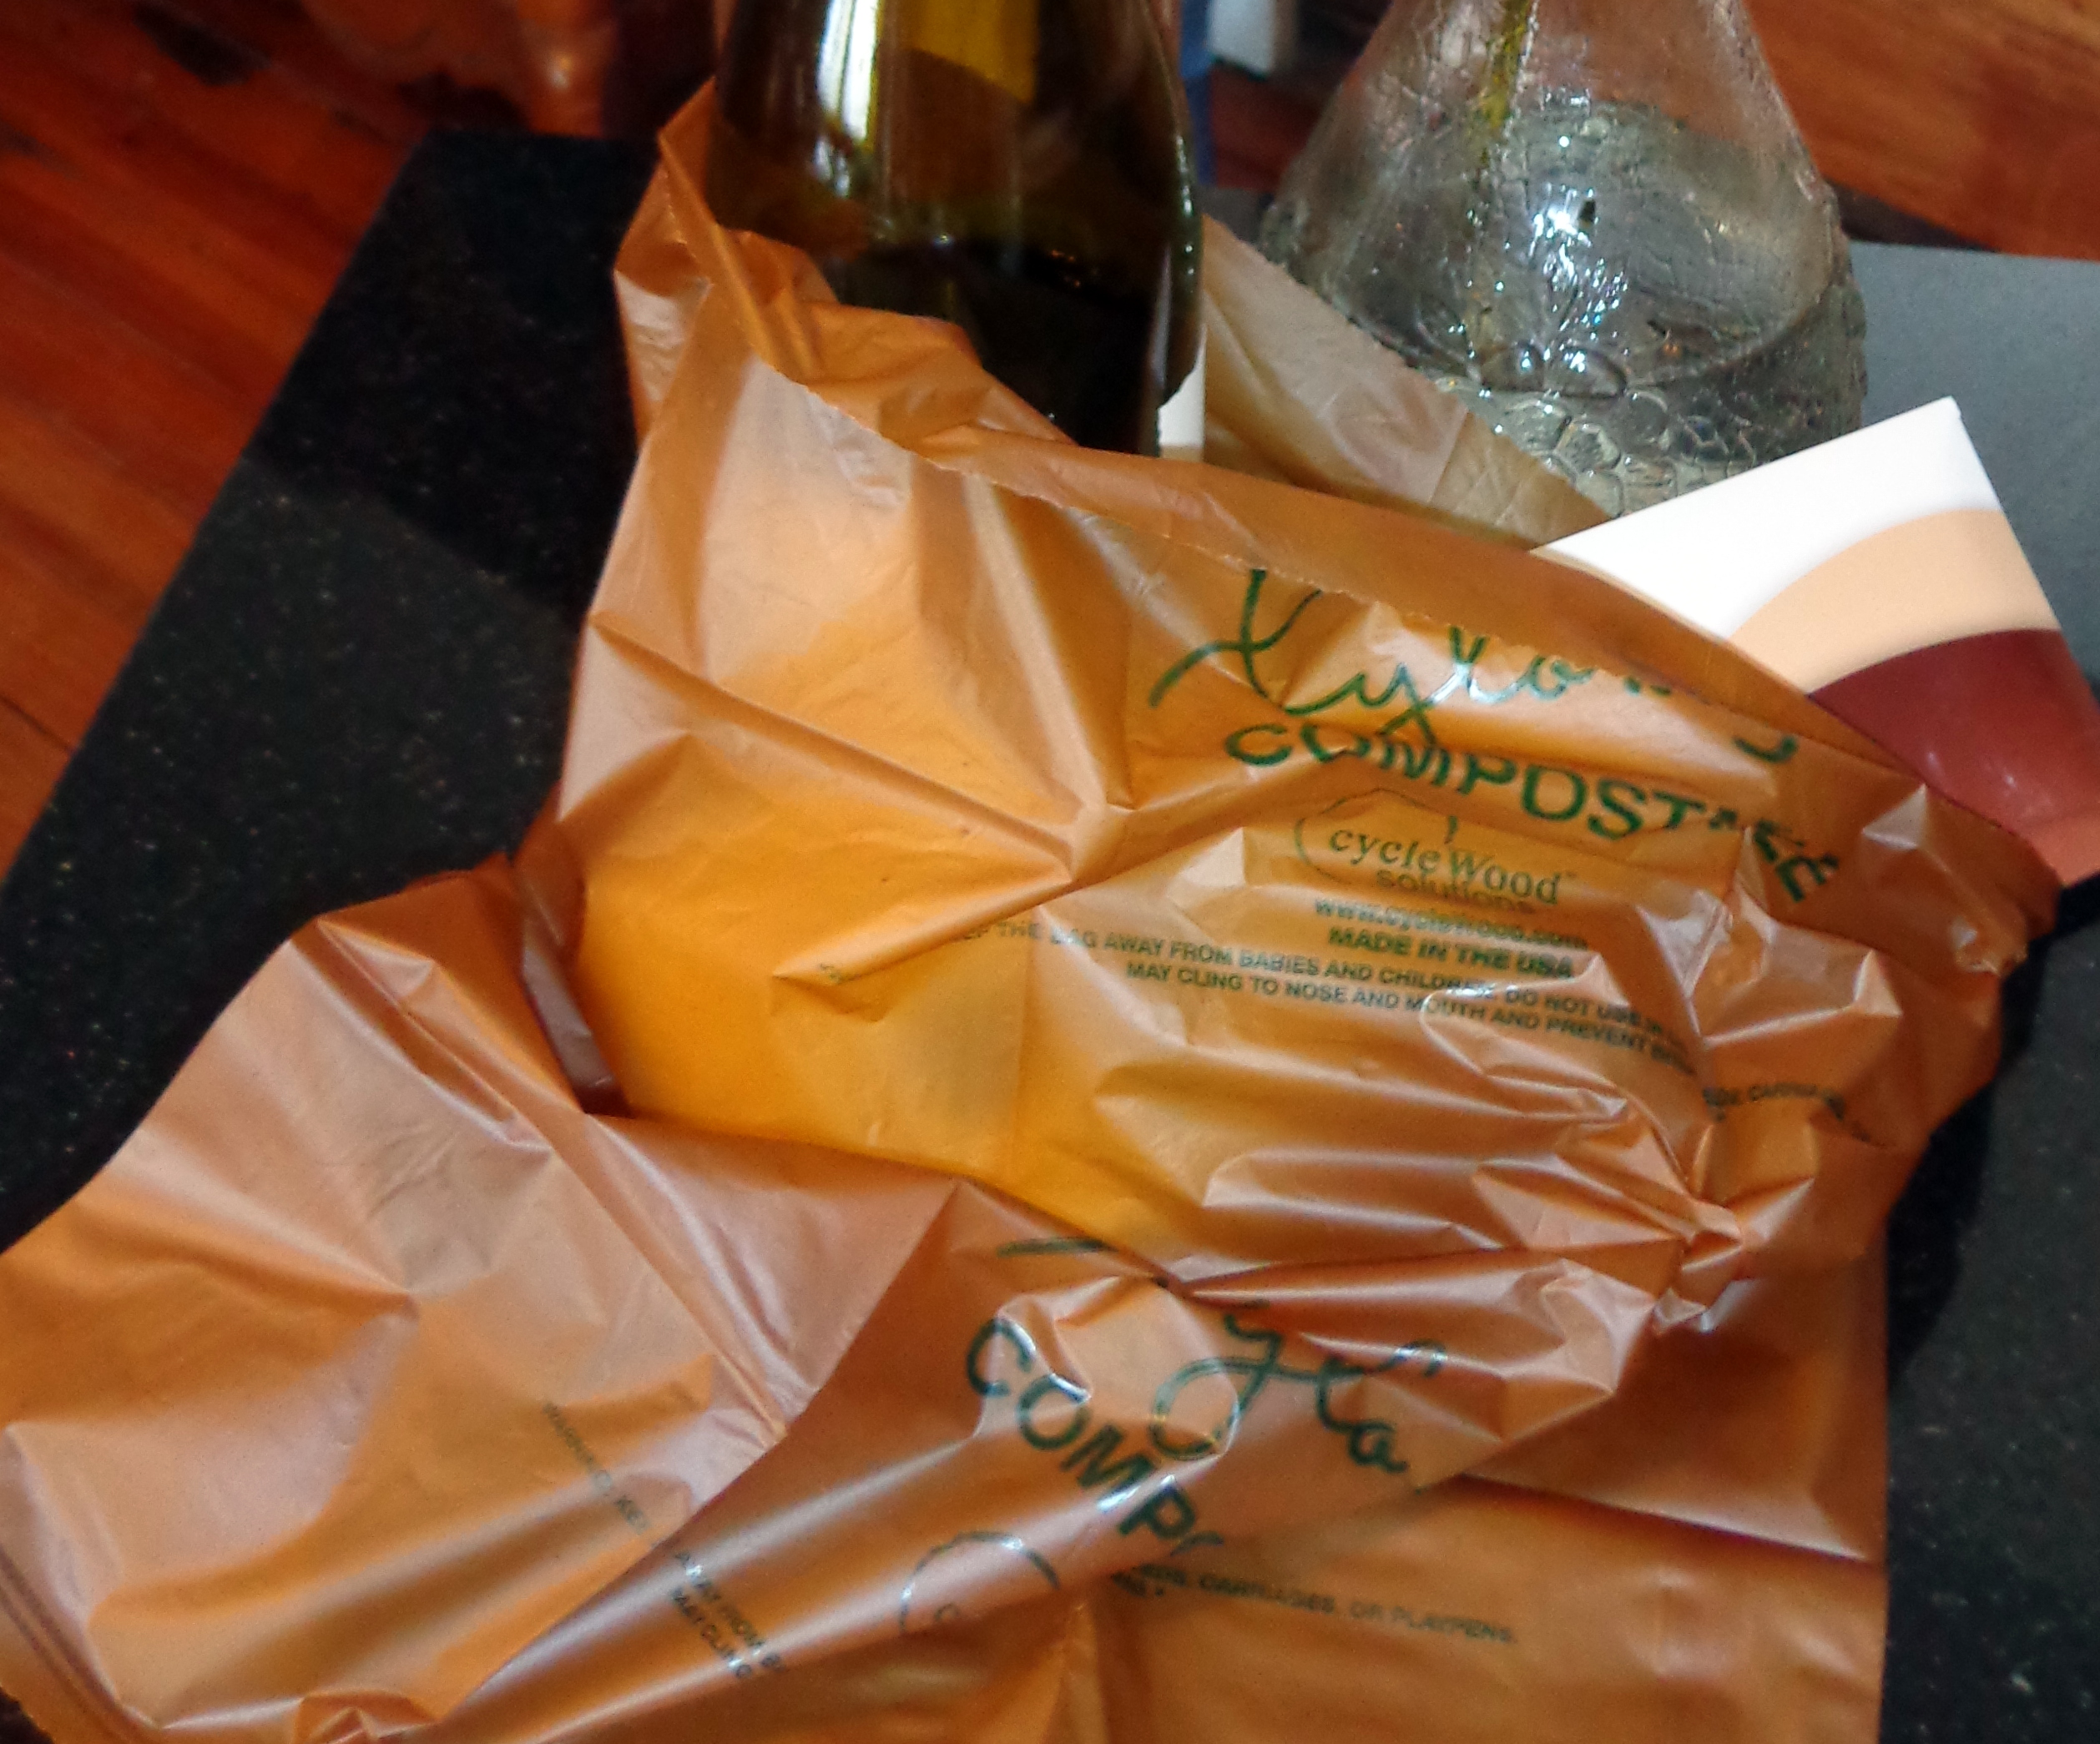 A biodegradable plastic bag